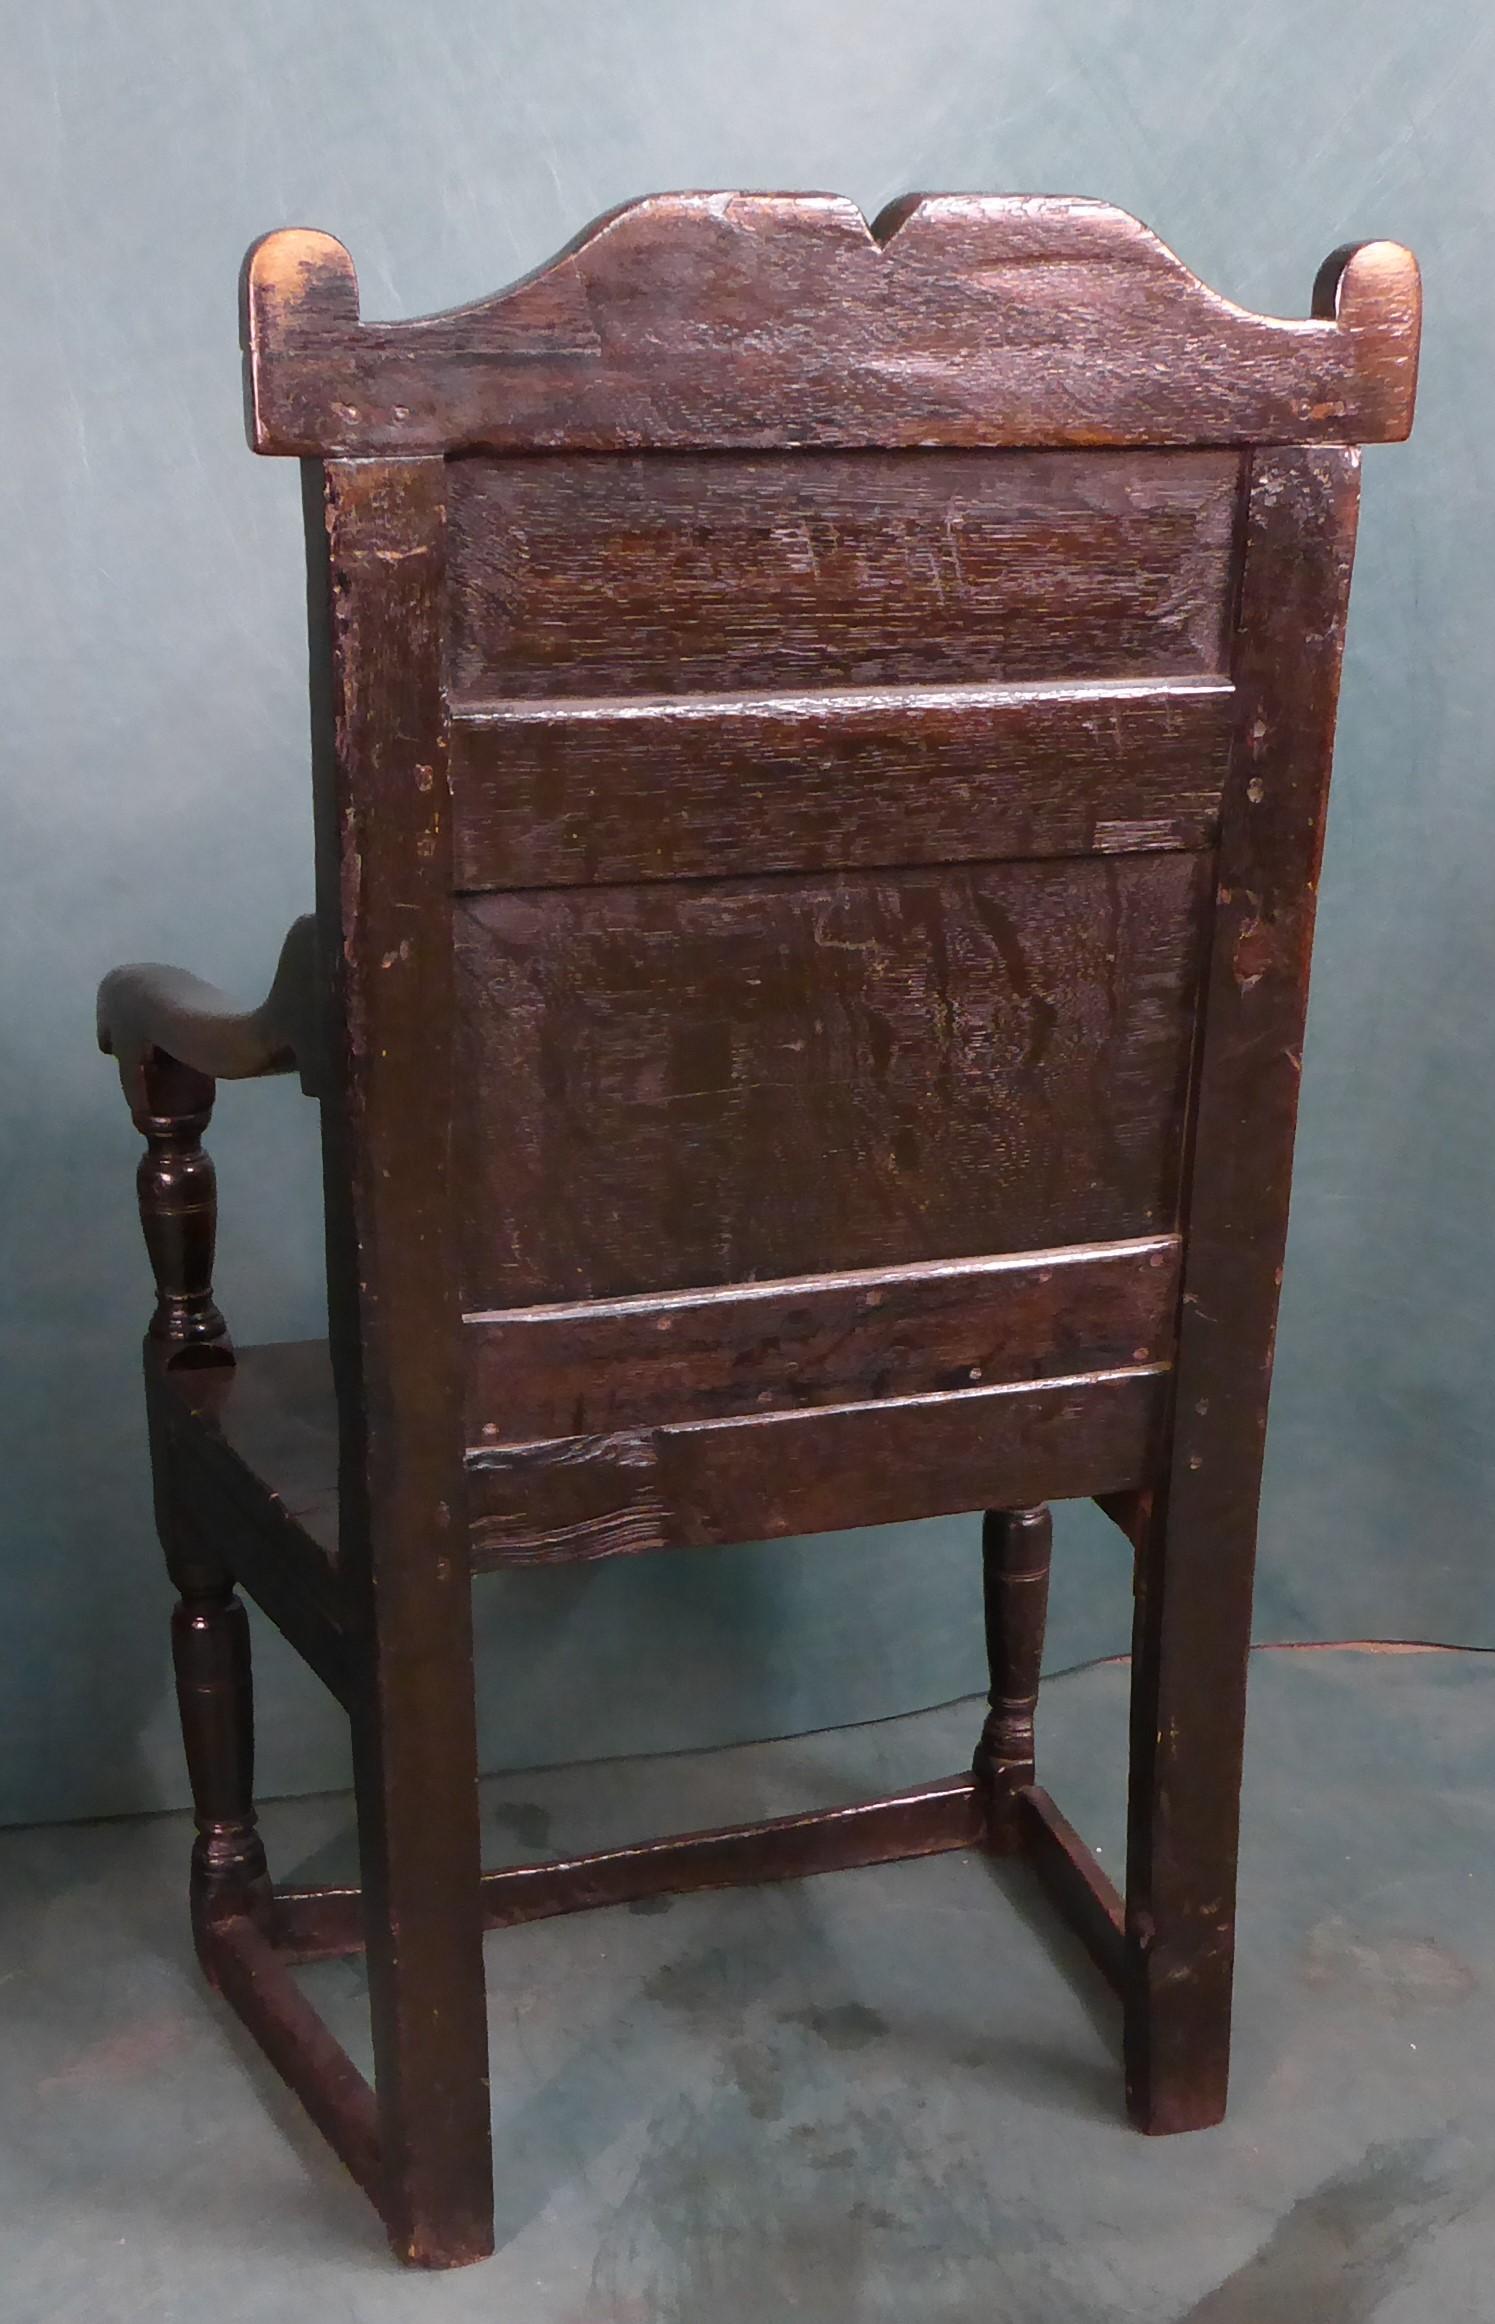 Une bonne chaise en chêne du 17ème siècle avec un dossier sculpté et une patine originale d'un beau lustre, la chaise brille par son âge et sa beauté.   Le président aurait été plus élevé cependant en raison de l'usure au fil des ans sur les sols en